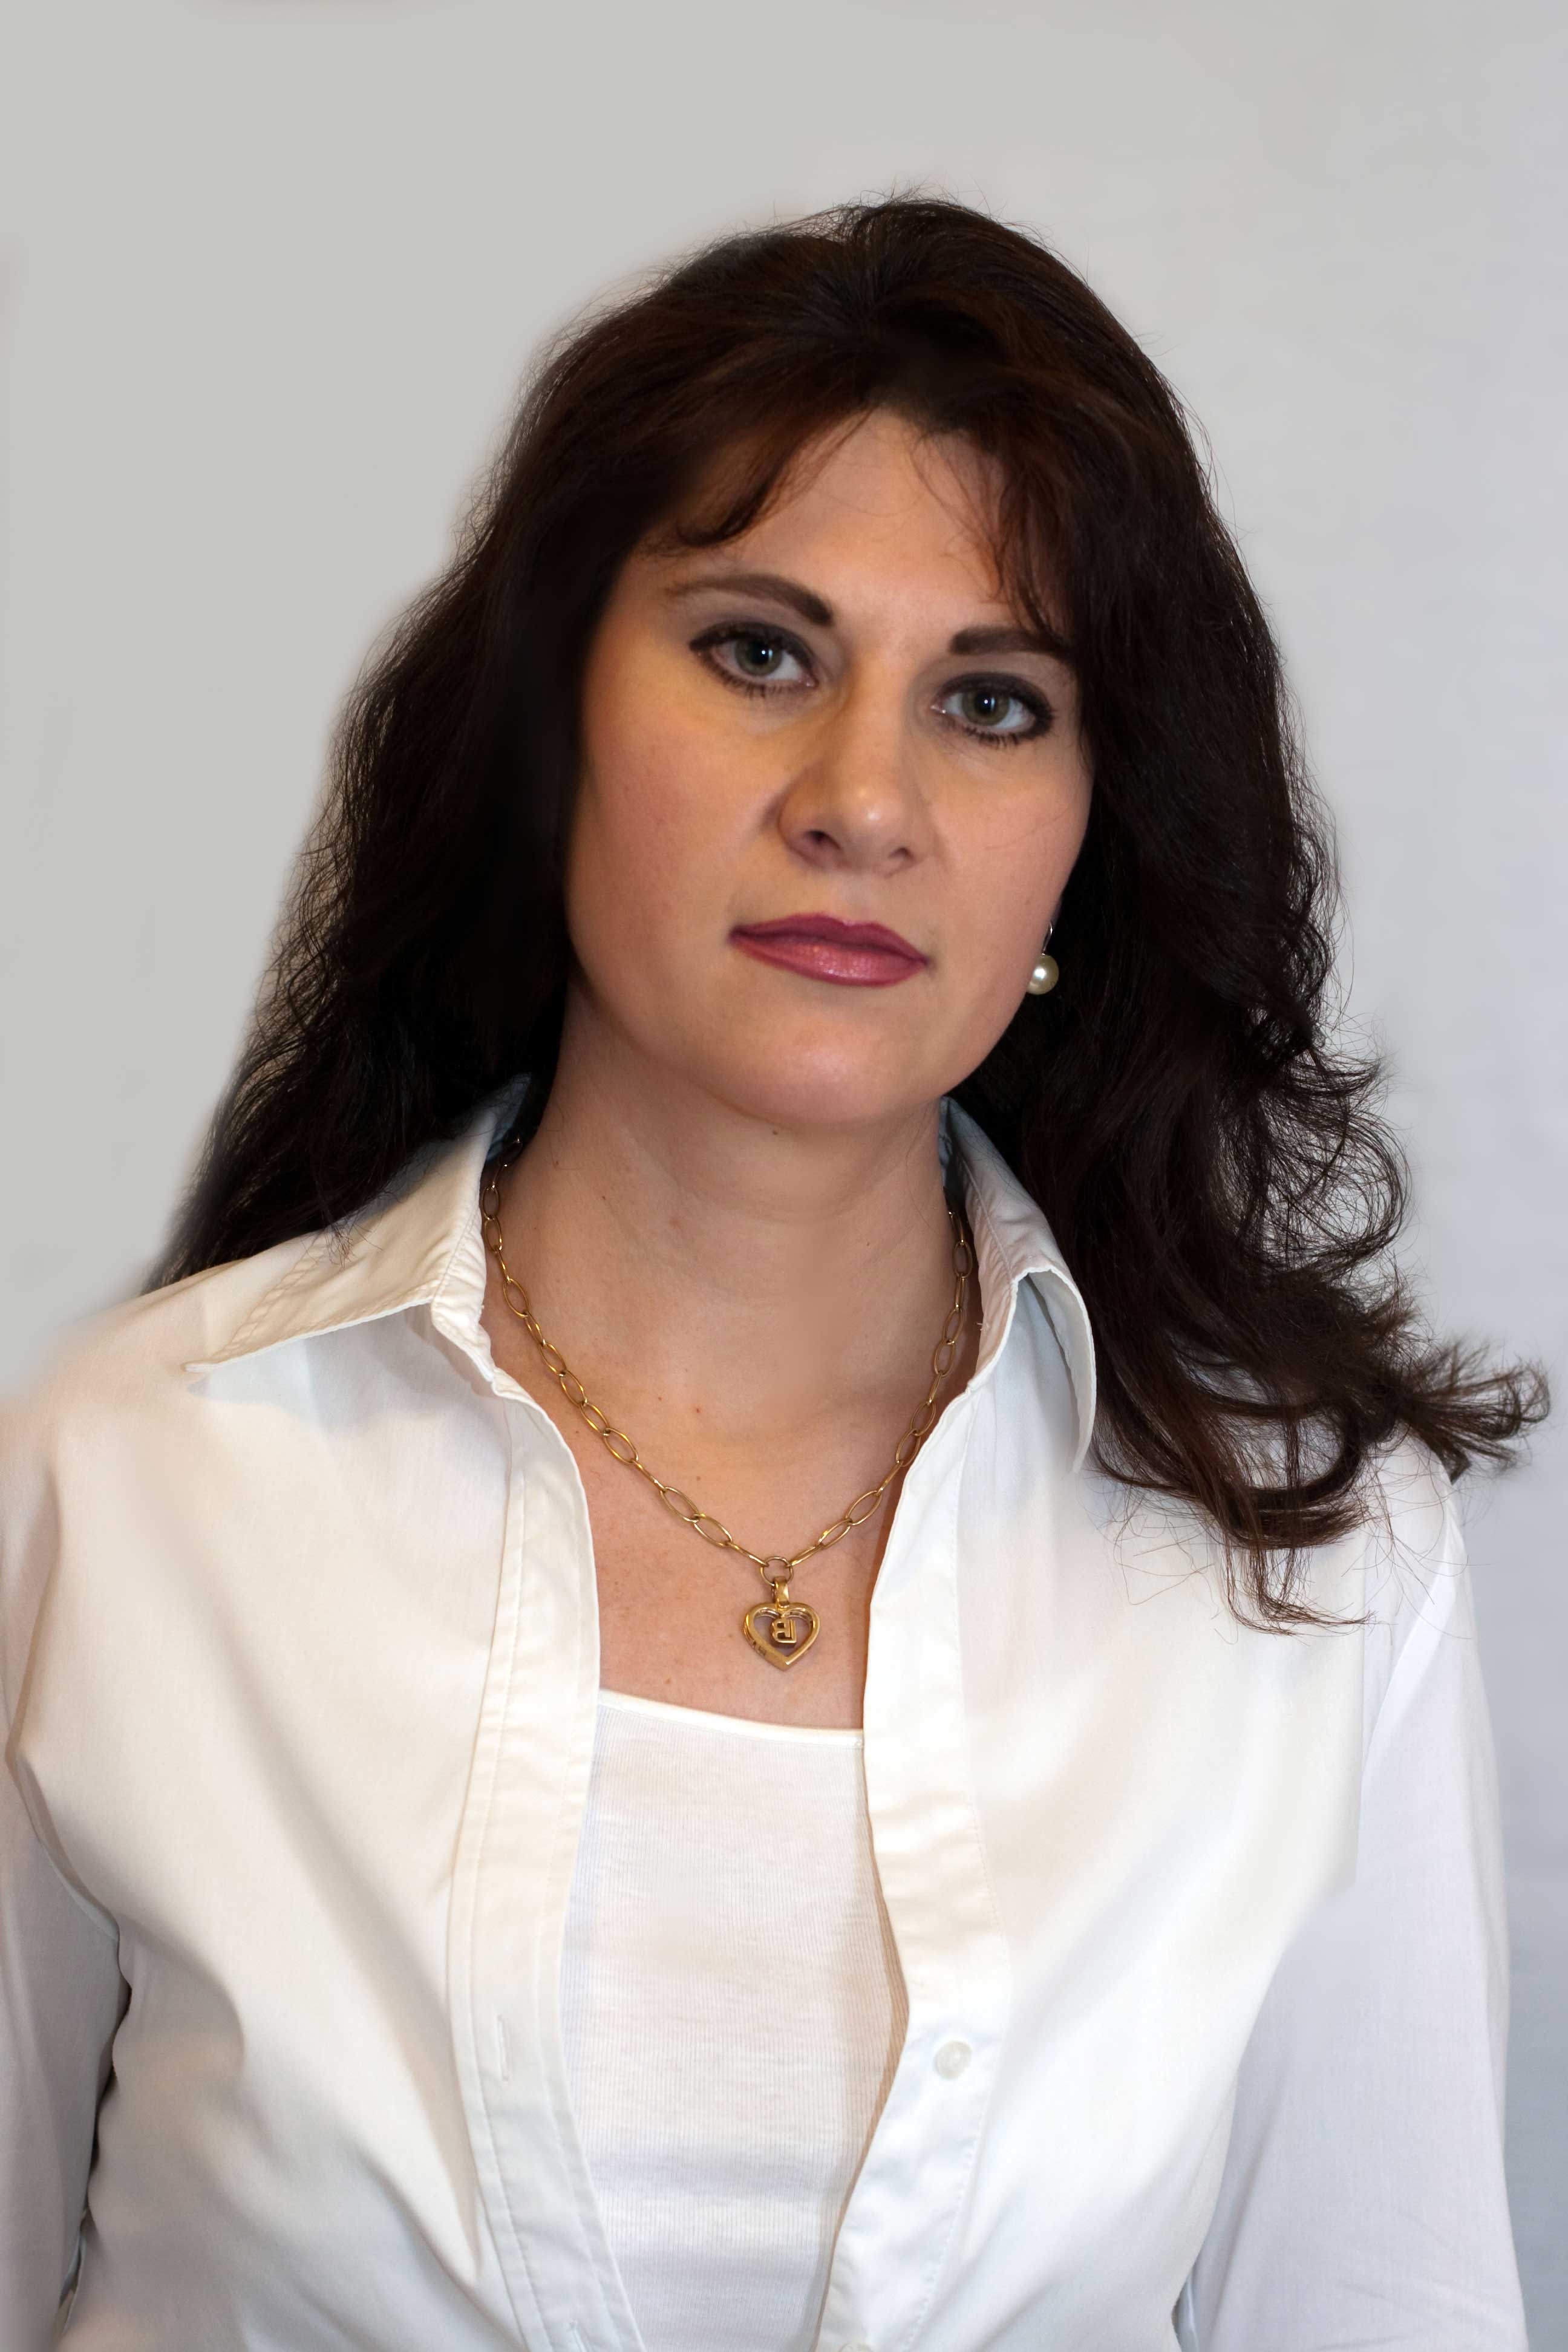 Dr. Heidi Bohn